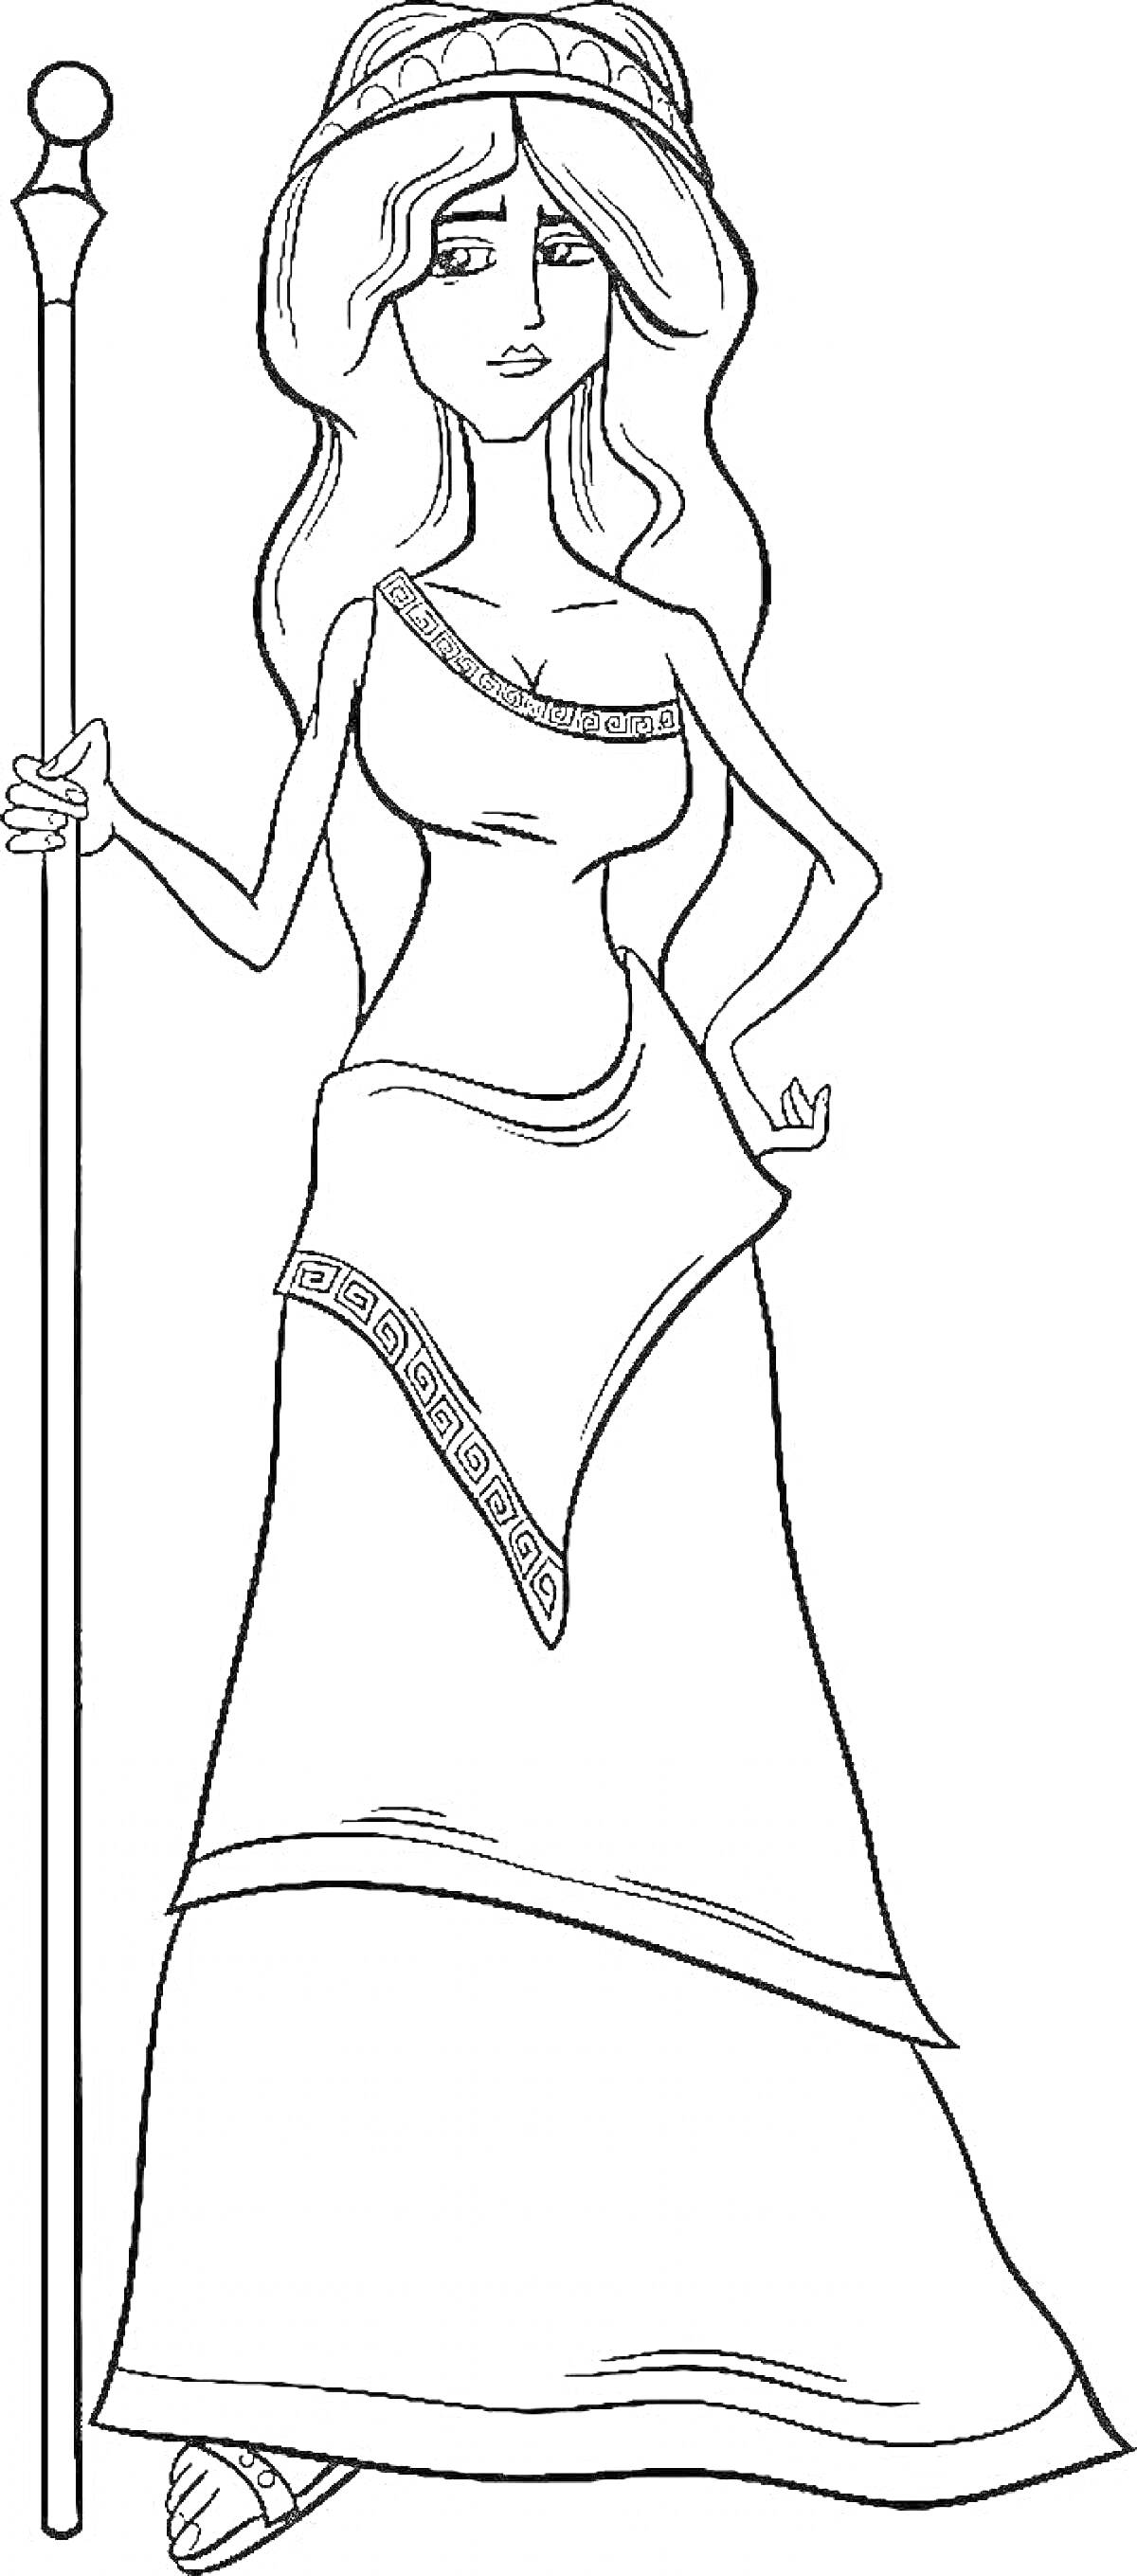 Раскраска Богиня Гера с посохом, в короне и платье